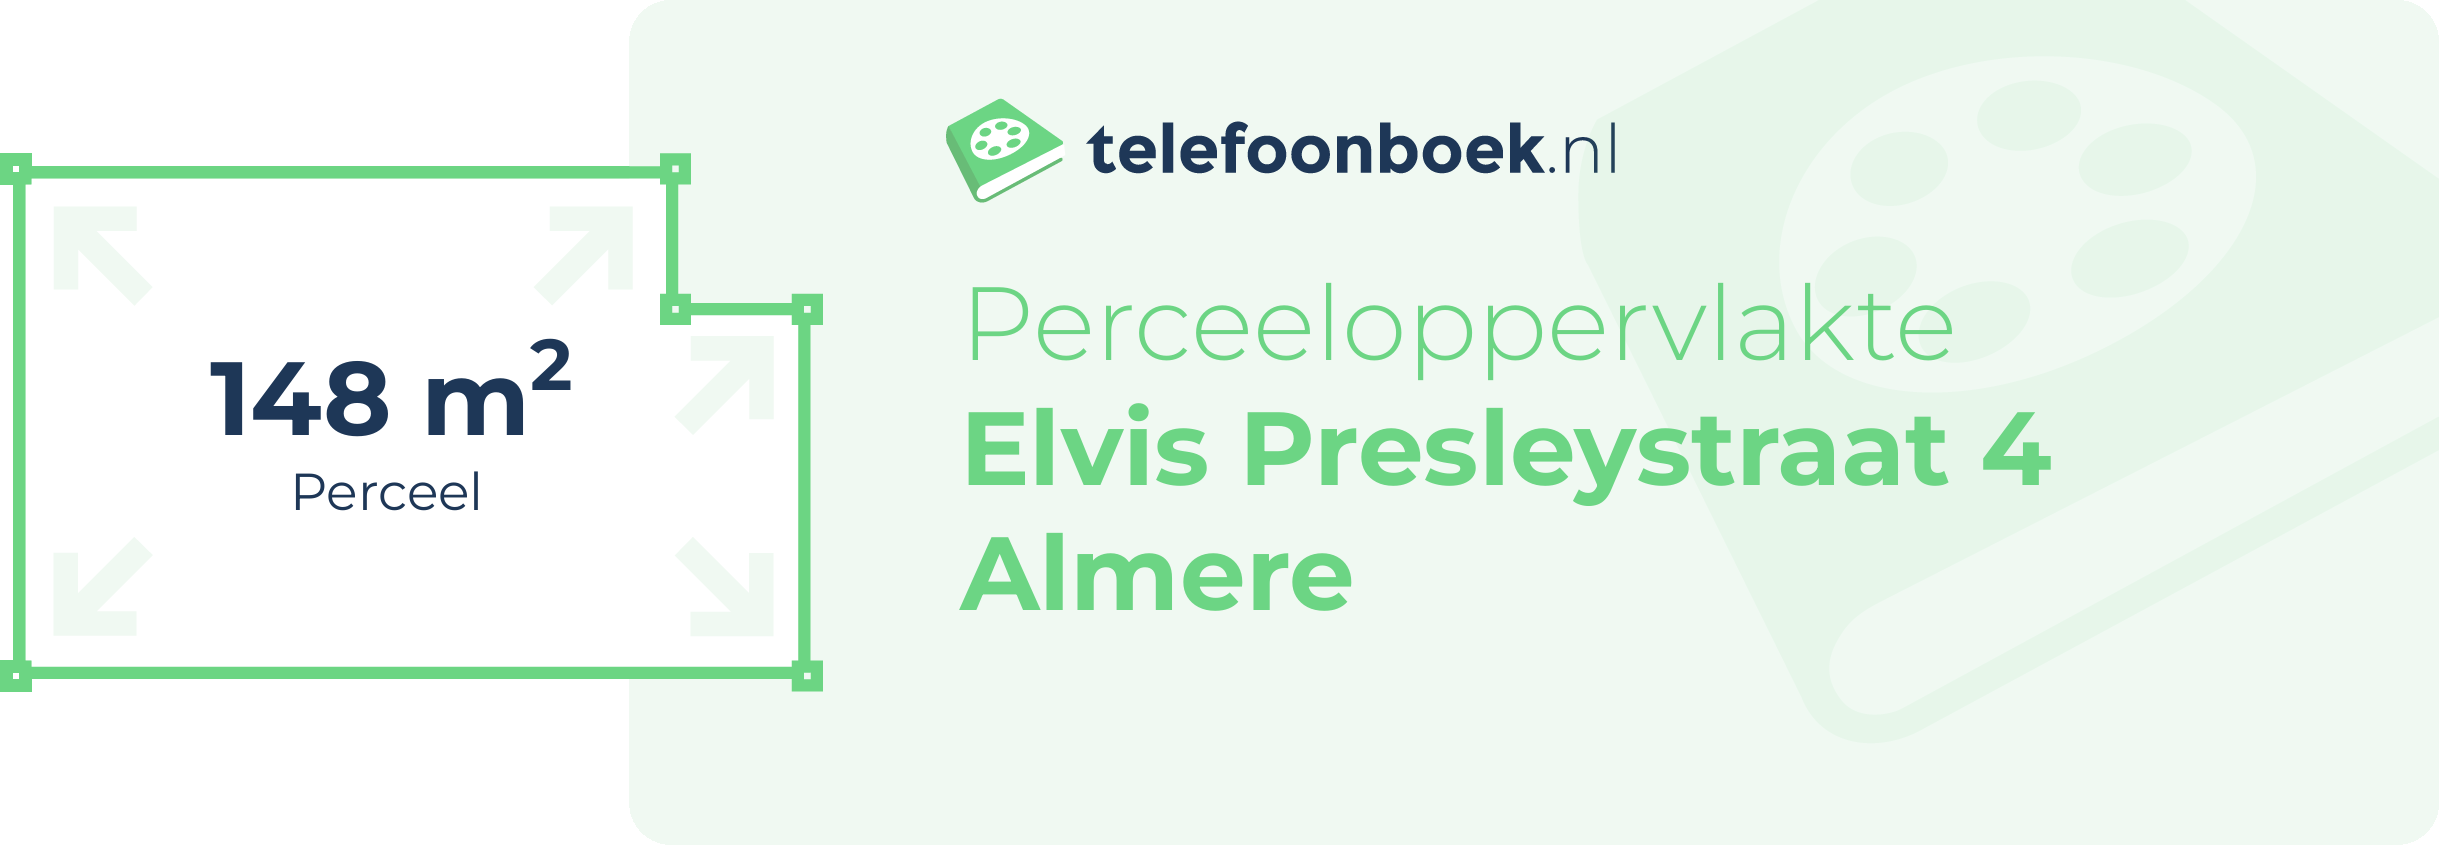 Perceeloppervlakte Elvis Presleystraat 4 Almere